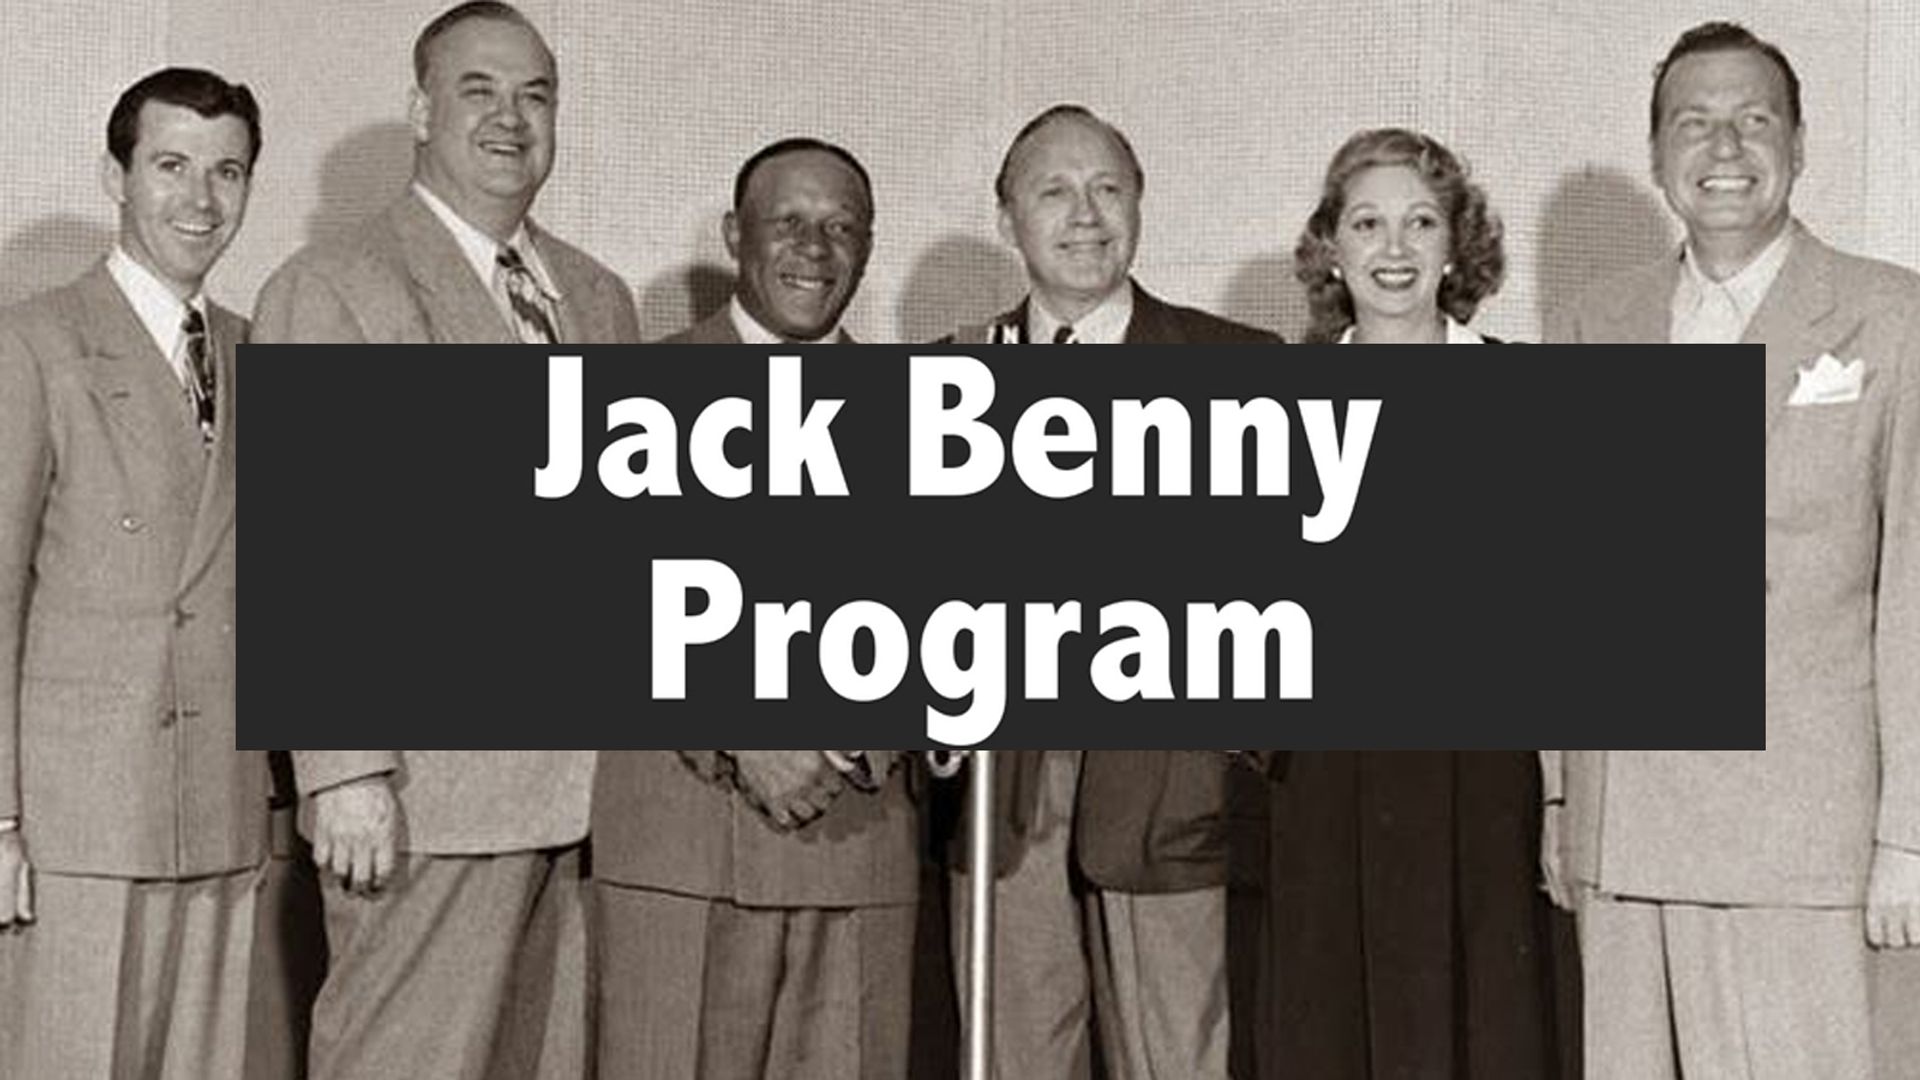 The Jack Benny Program Backdrop